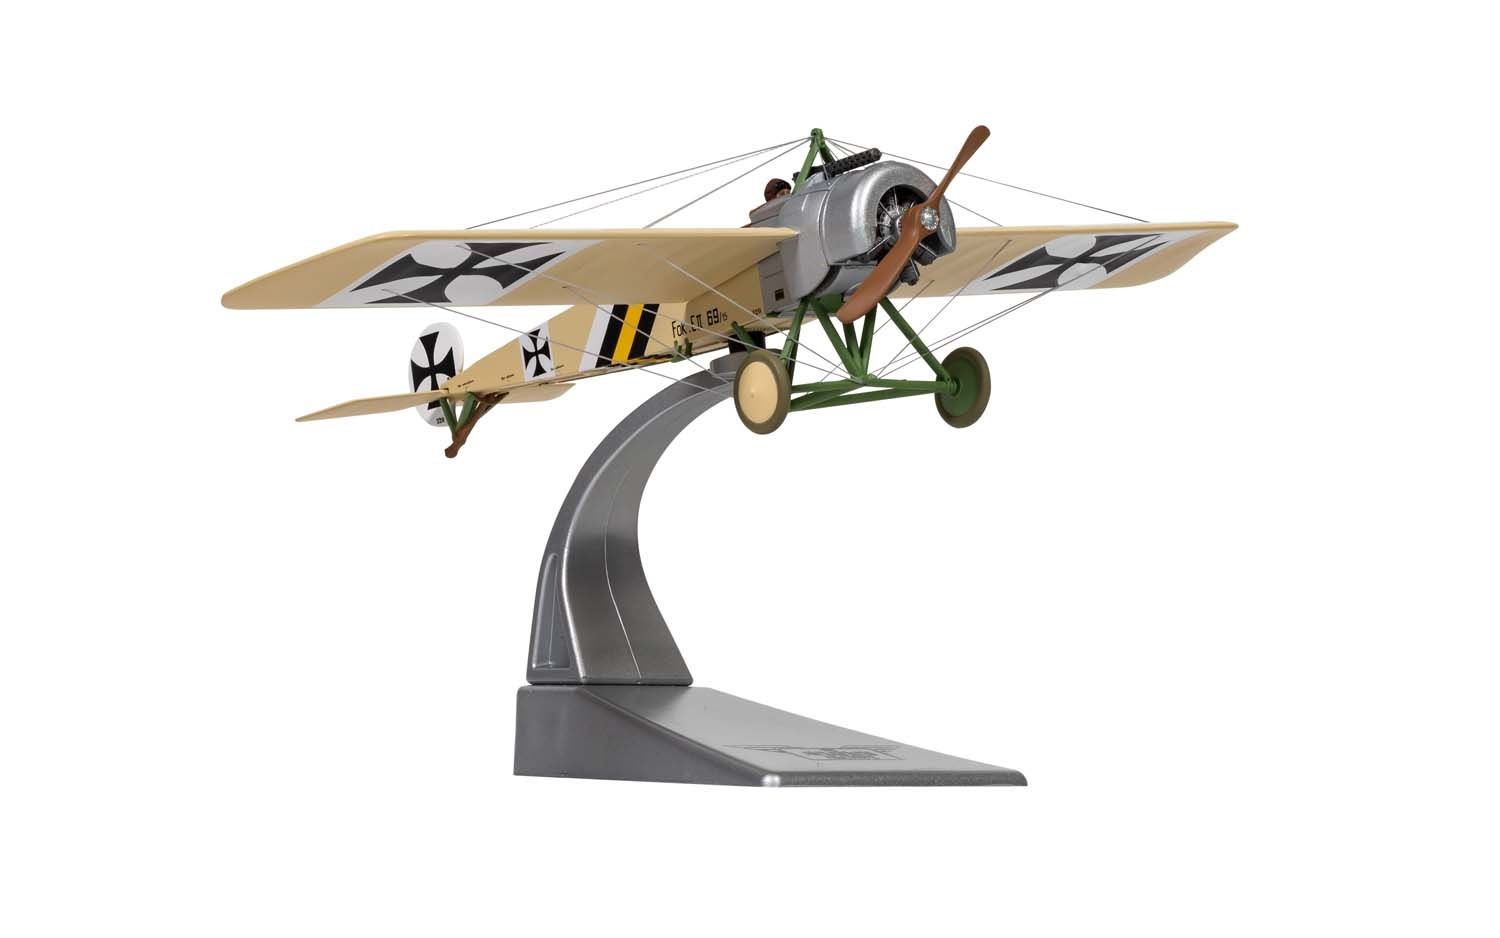 【お得格安】コーギー 1/48 フォッカー E.II アインデッカー 69/15 flown by Kurt von Crailsheim FFA 53 Monthois フランス 1915年10月 軍用機